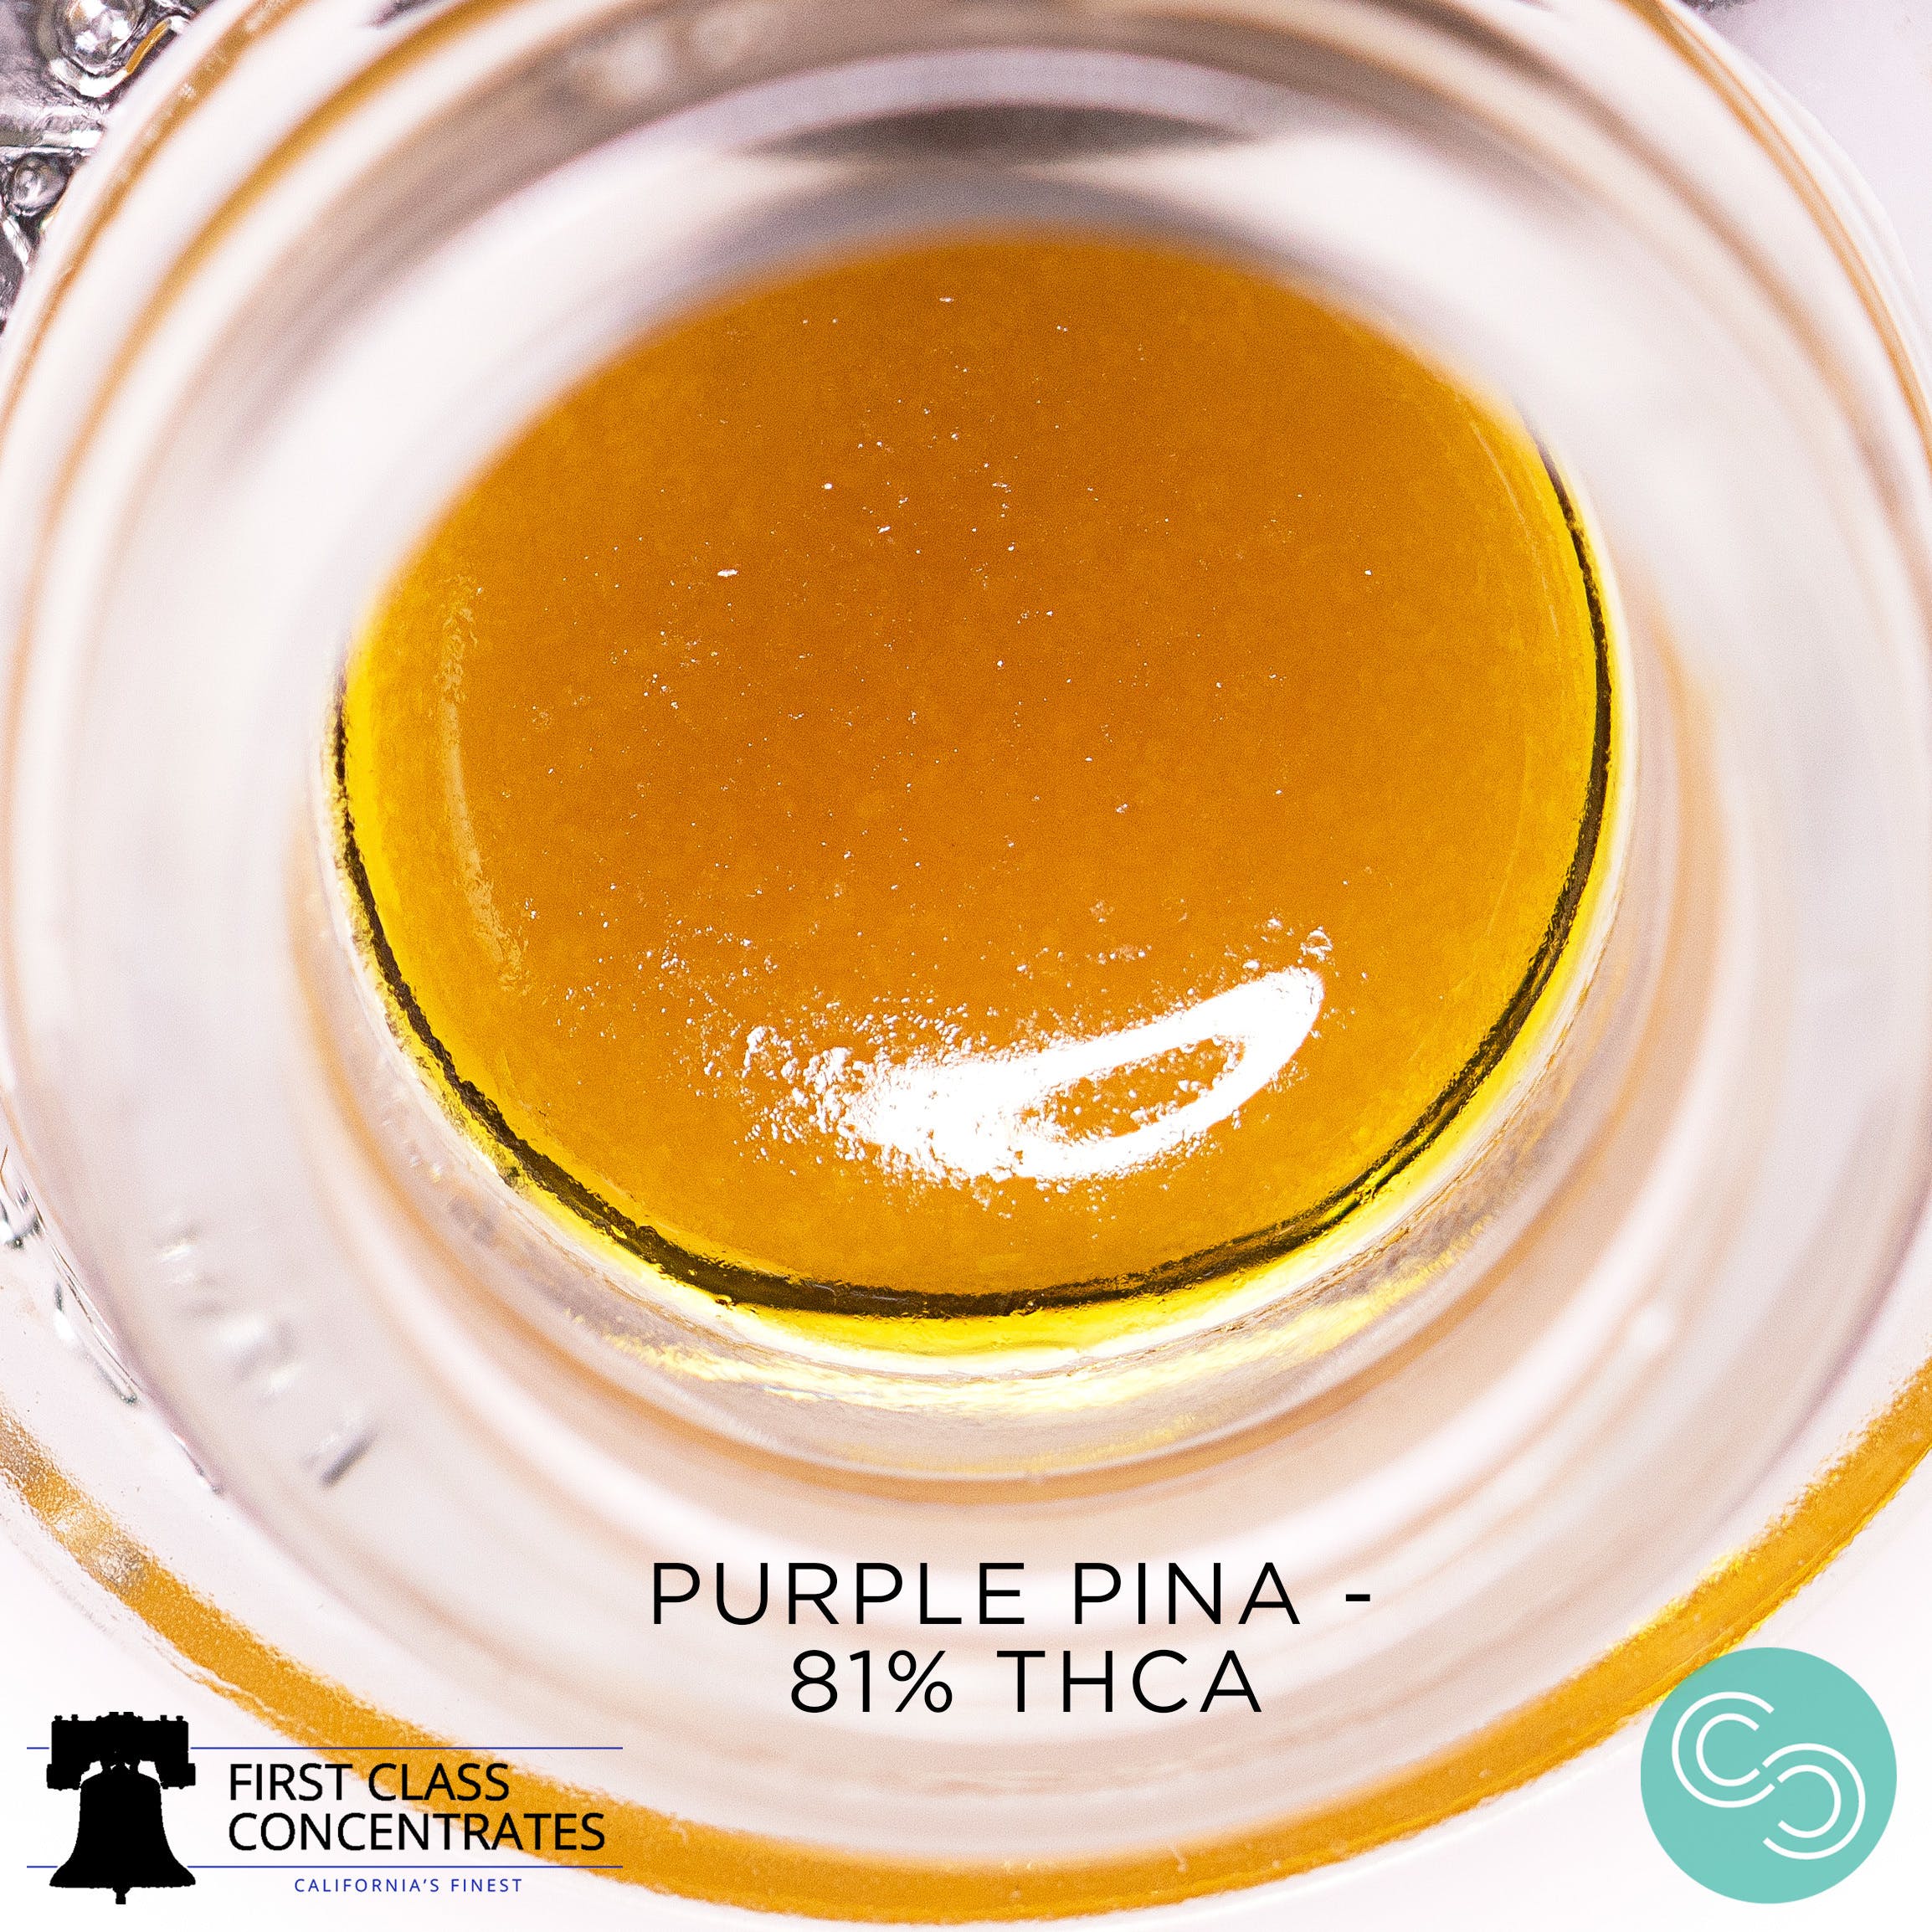 marijuana-dispensaries-114a-otto-circle-sacramento-first-class-concentrates-purple-pina-81-25-thca